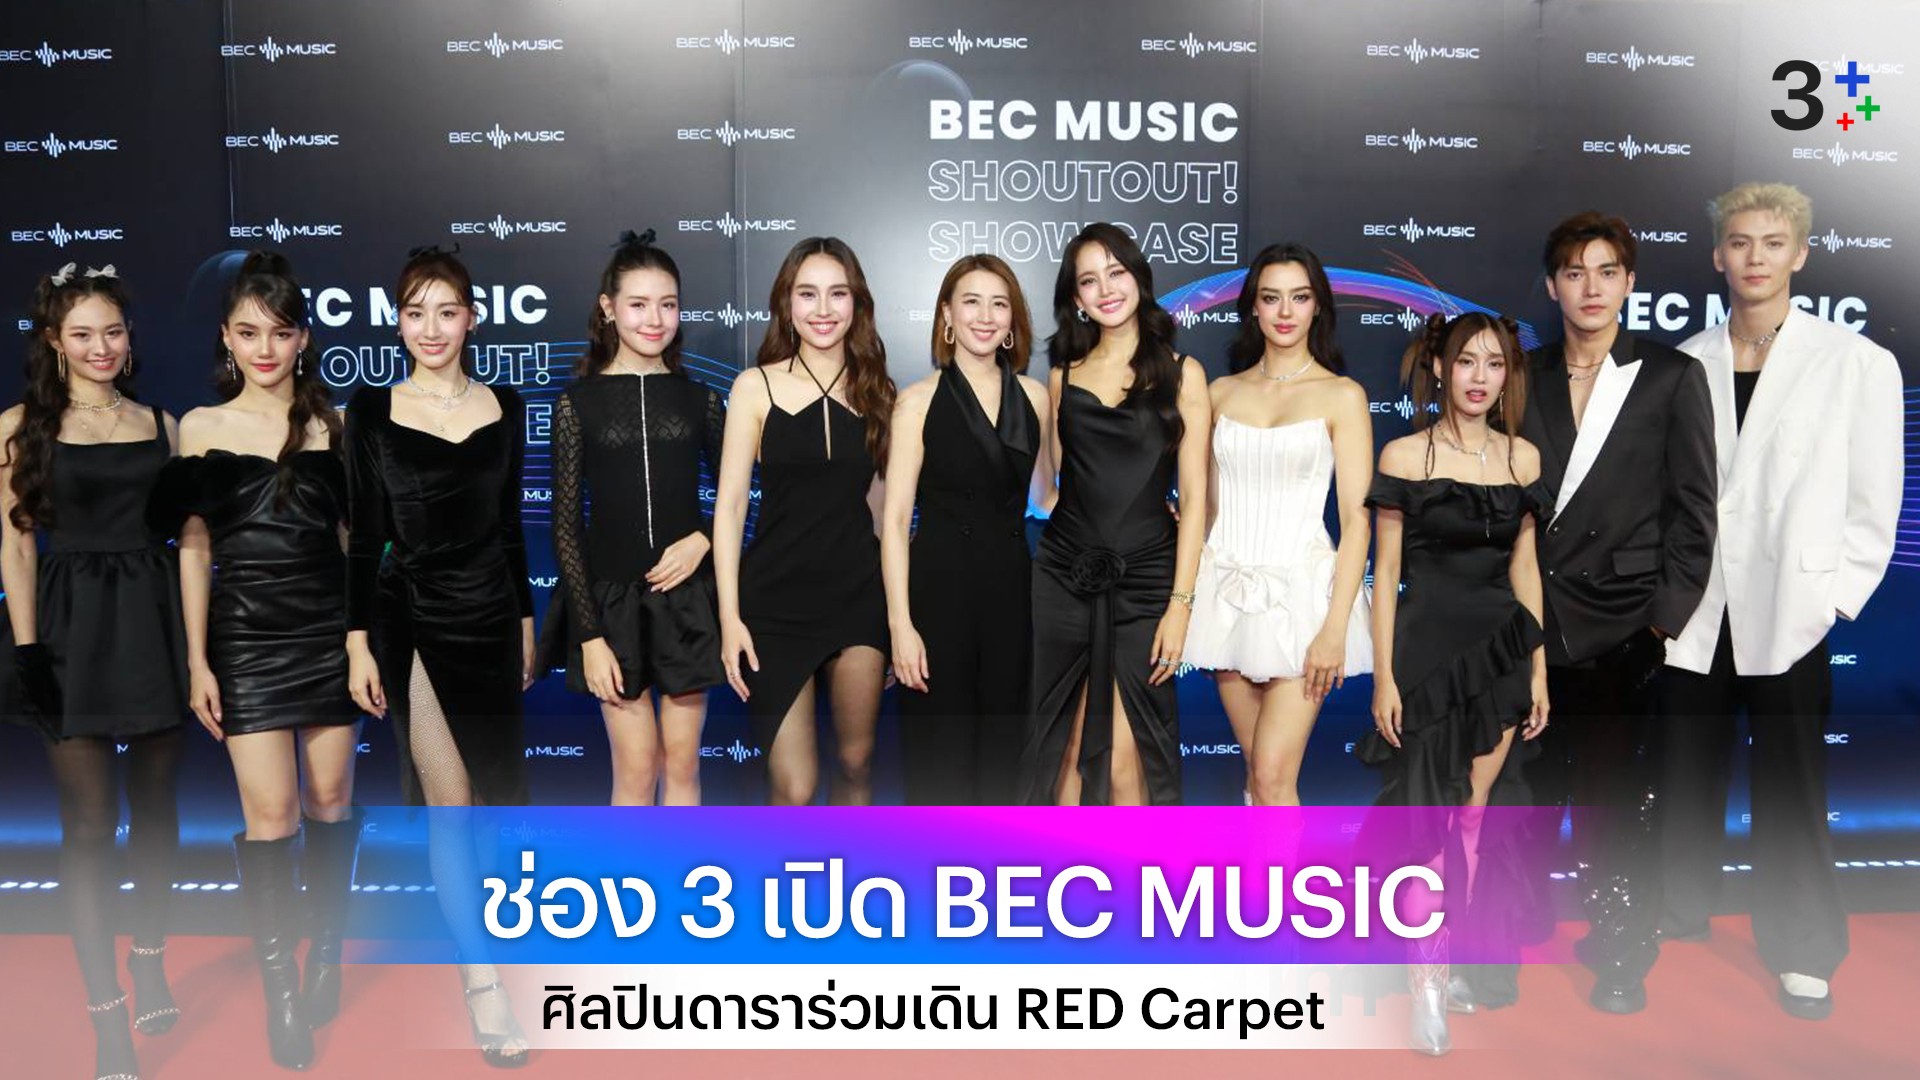 ช่อง 3 จัดใหญ่ เปิดค่ายเพลง BEC MUSIC สุดอลังการ ศิลปินดารา ยกขบวนร่วมเดิน RED Carpet